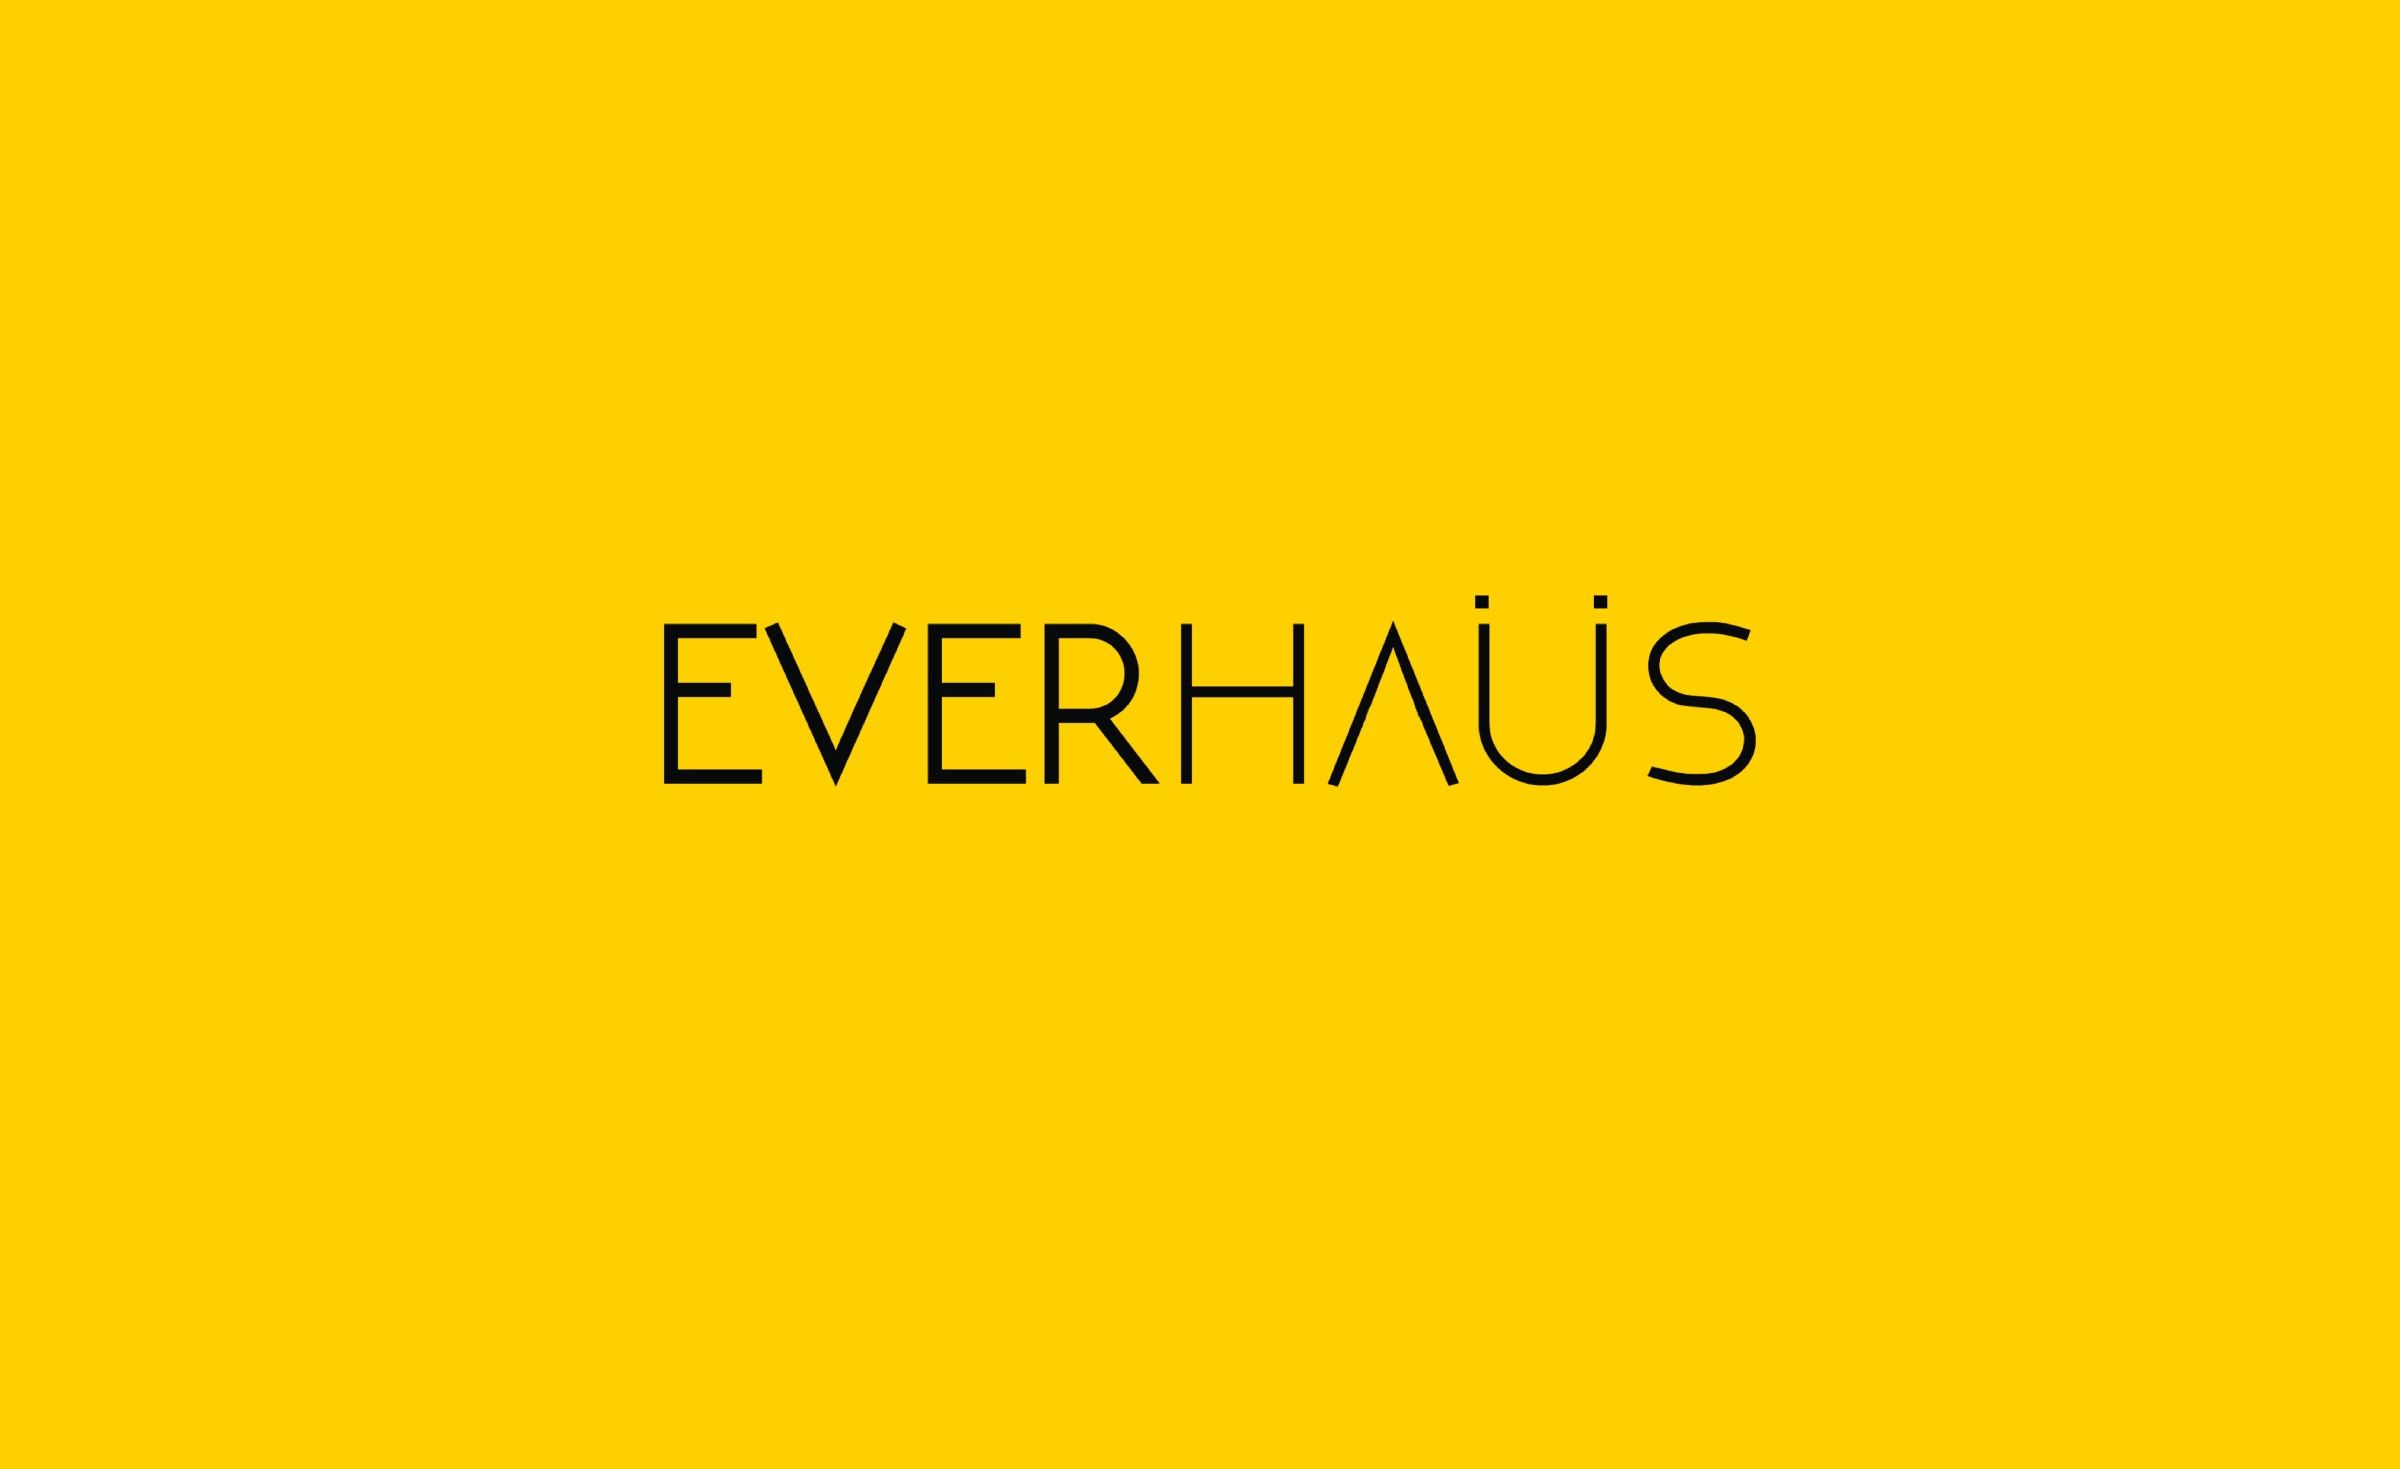 Everhaus, didirikan oleh Gitta Amellia saat 23 tahun, Everhaus telah berkembang dengan pesat